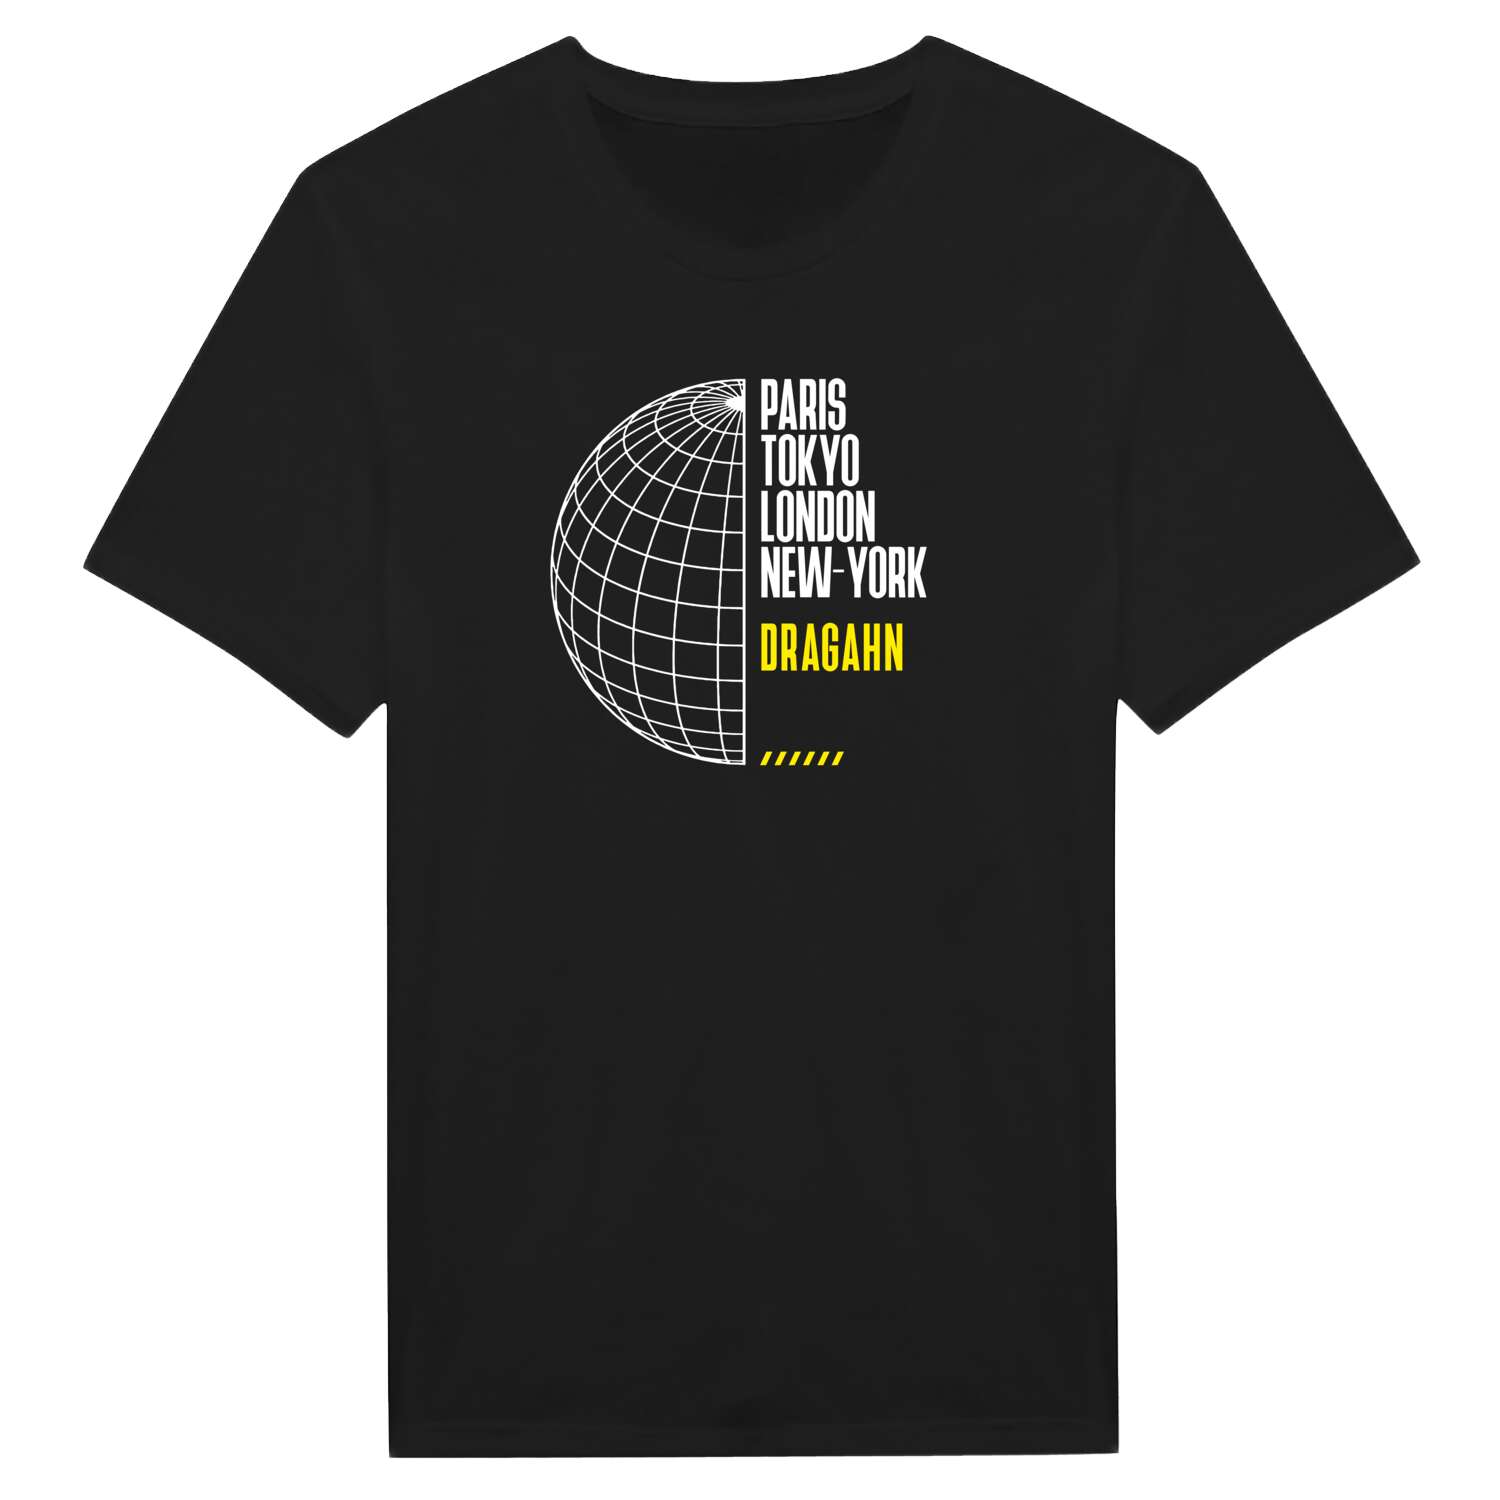 Dragahn T-Shirt »Paris Tokyo London«